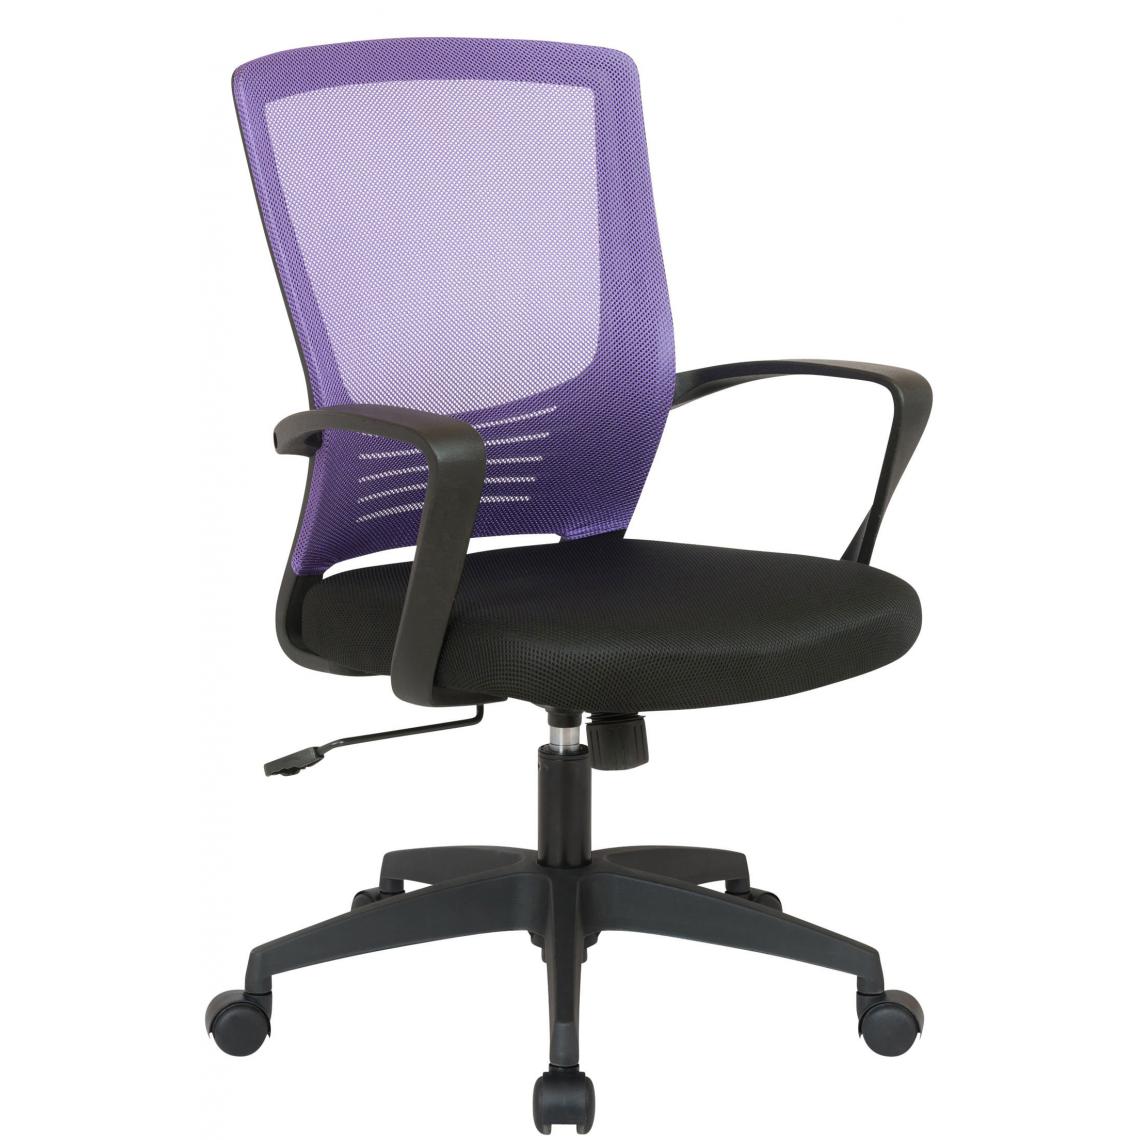 Decoshop26 - Chaise fauteuil de bureau sur roulettes en maille violet et noir réglable avec accoudoirs BUR10362 - Bureaux